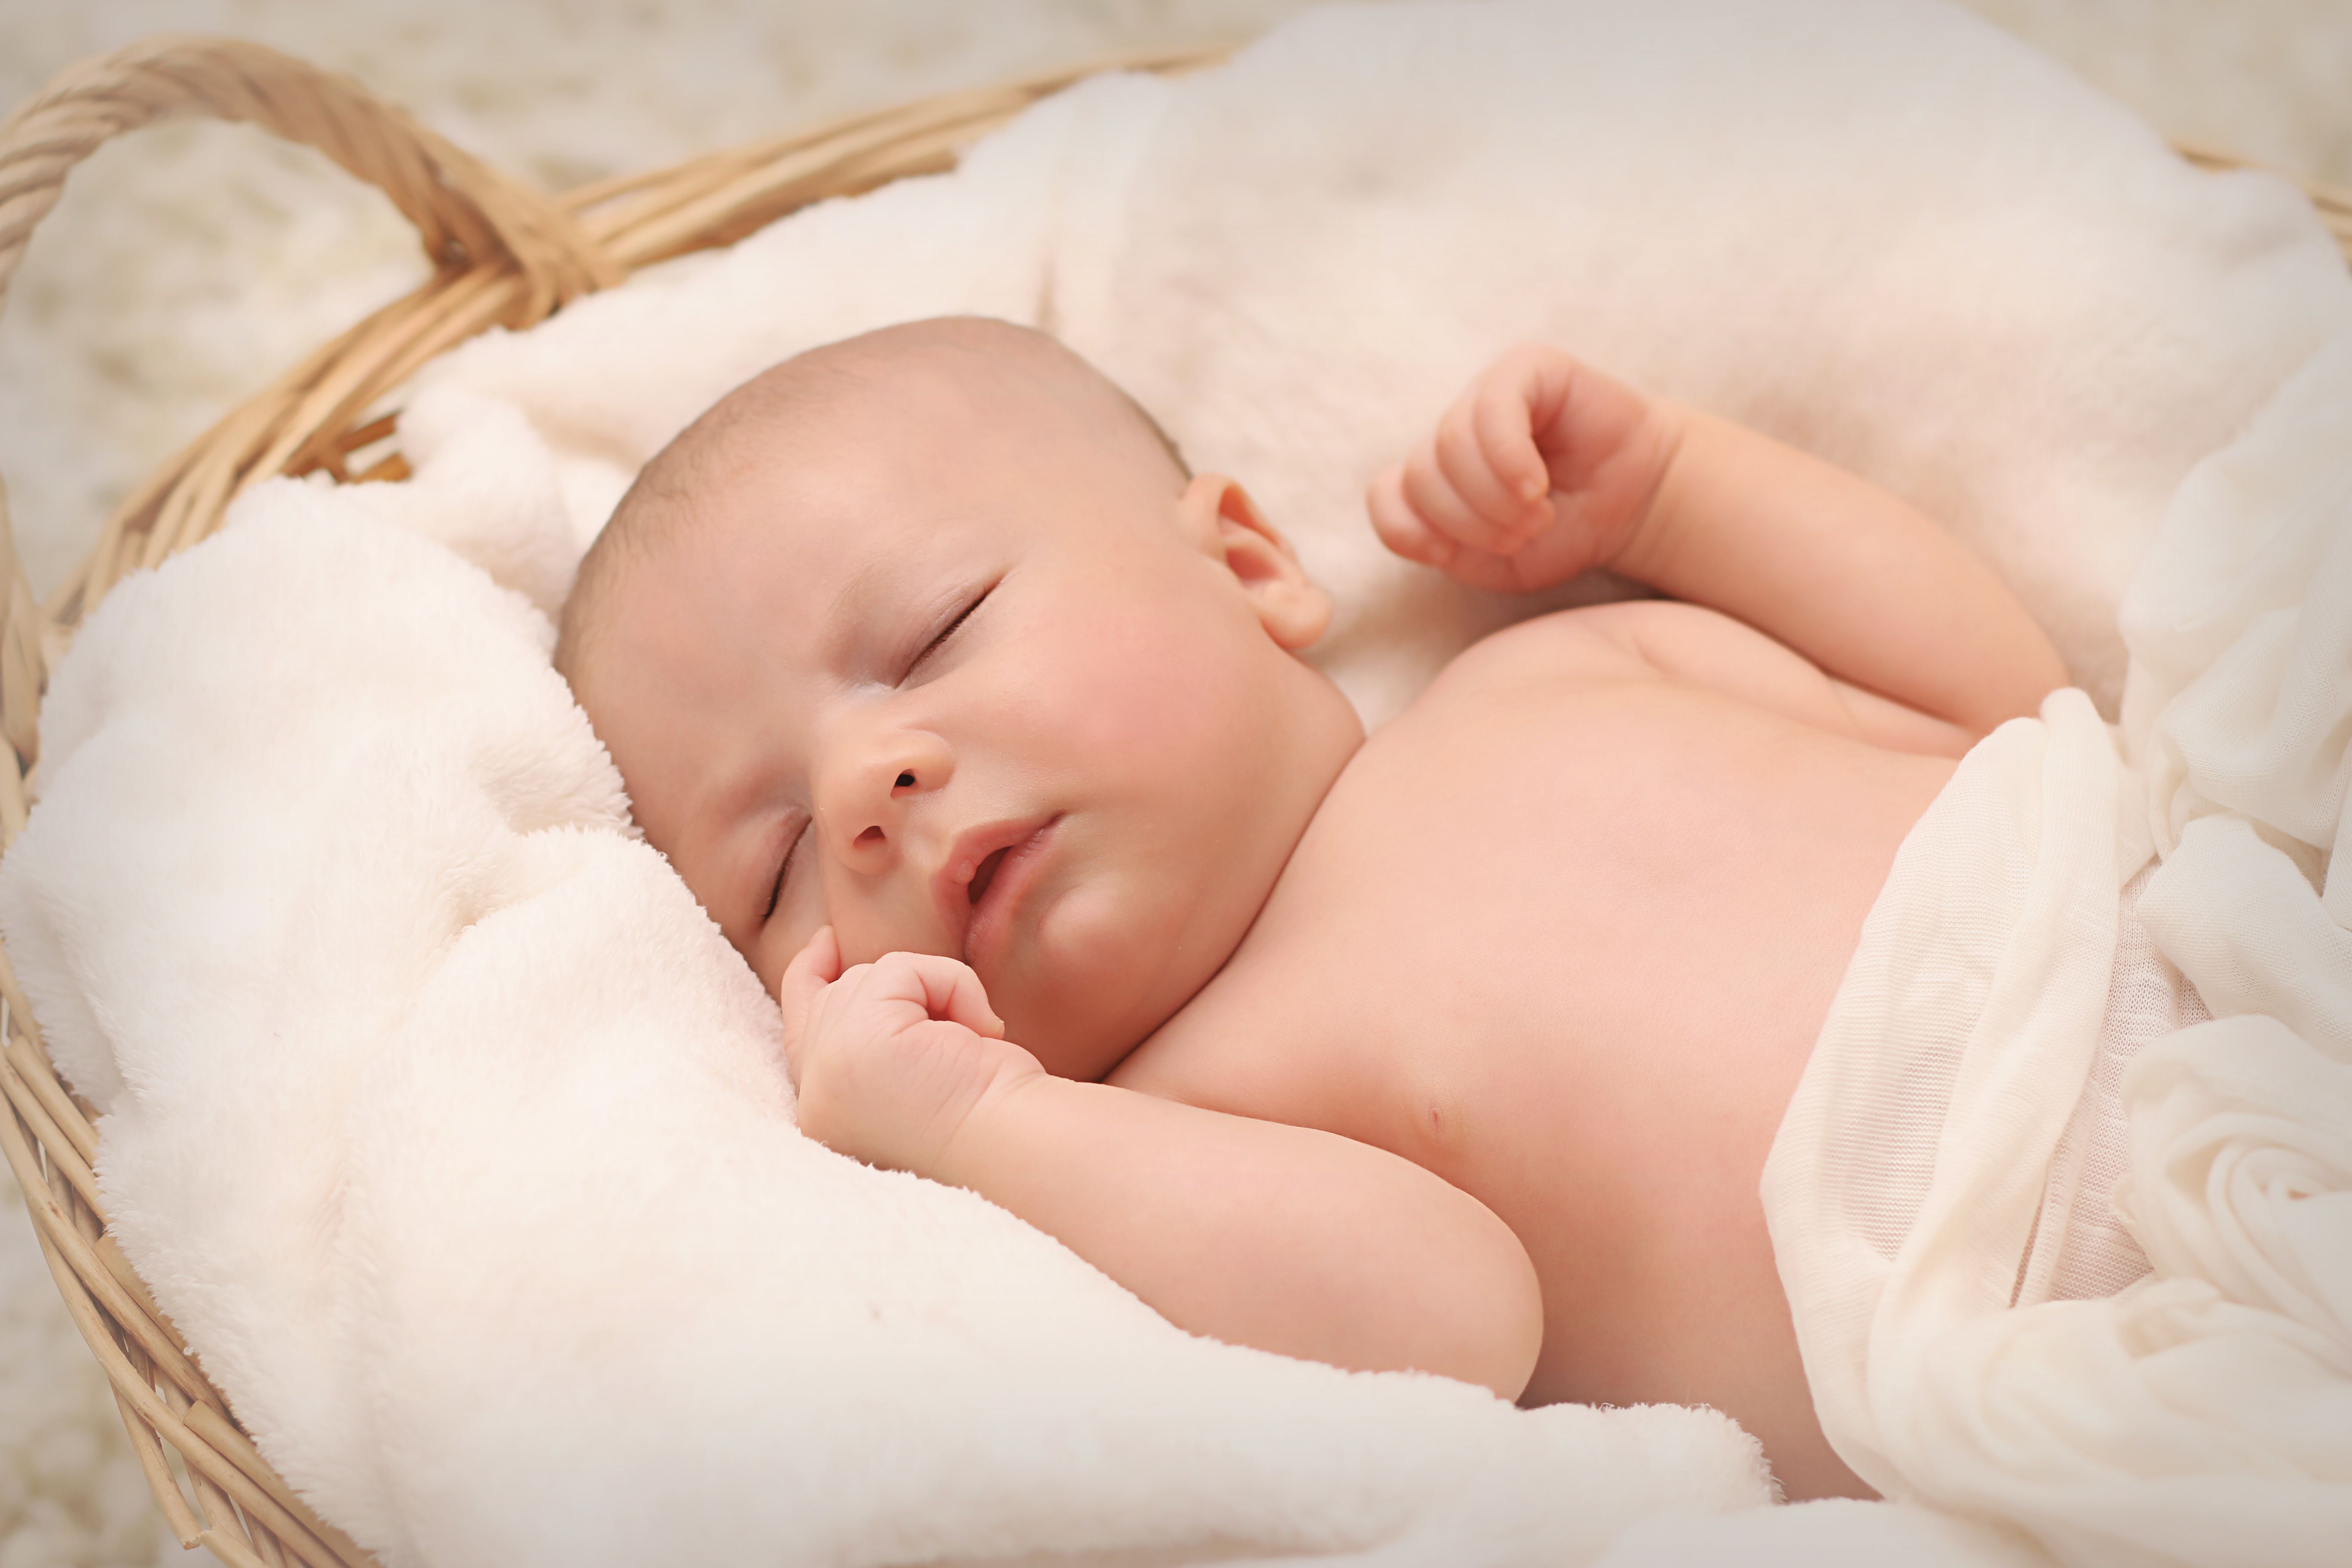 Baby Sleeping on White Cotton · Free